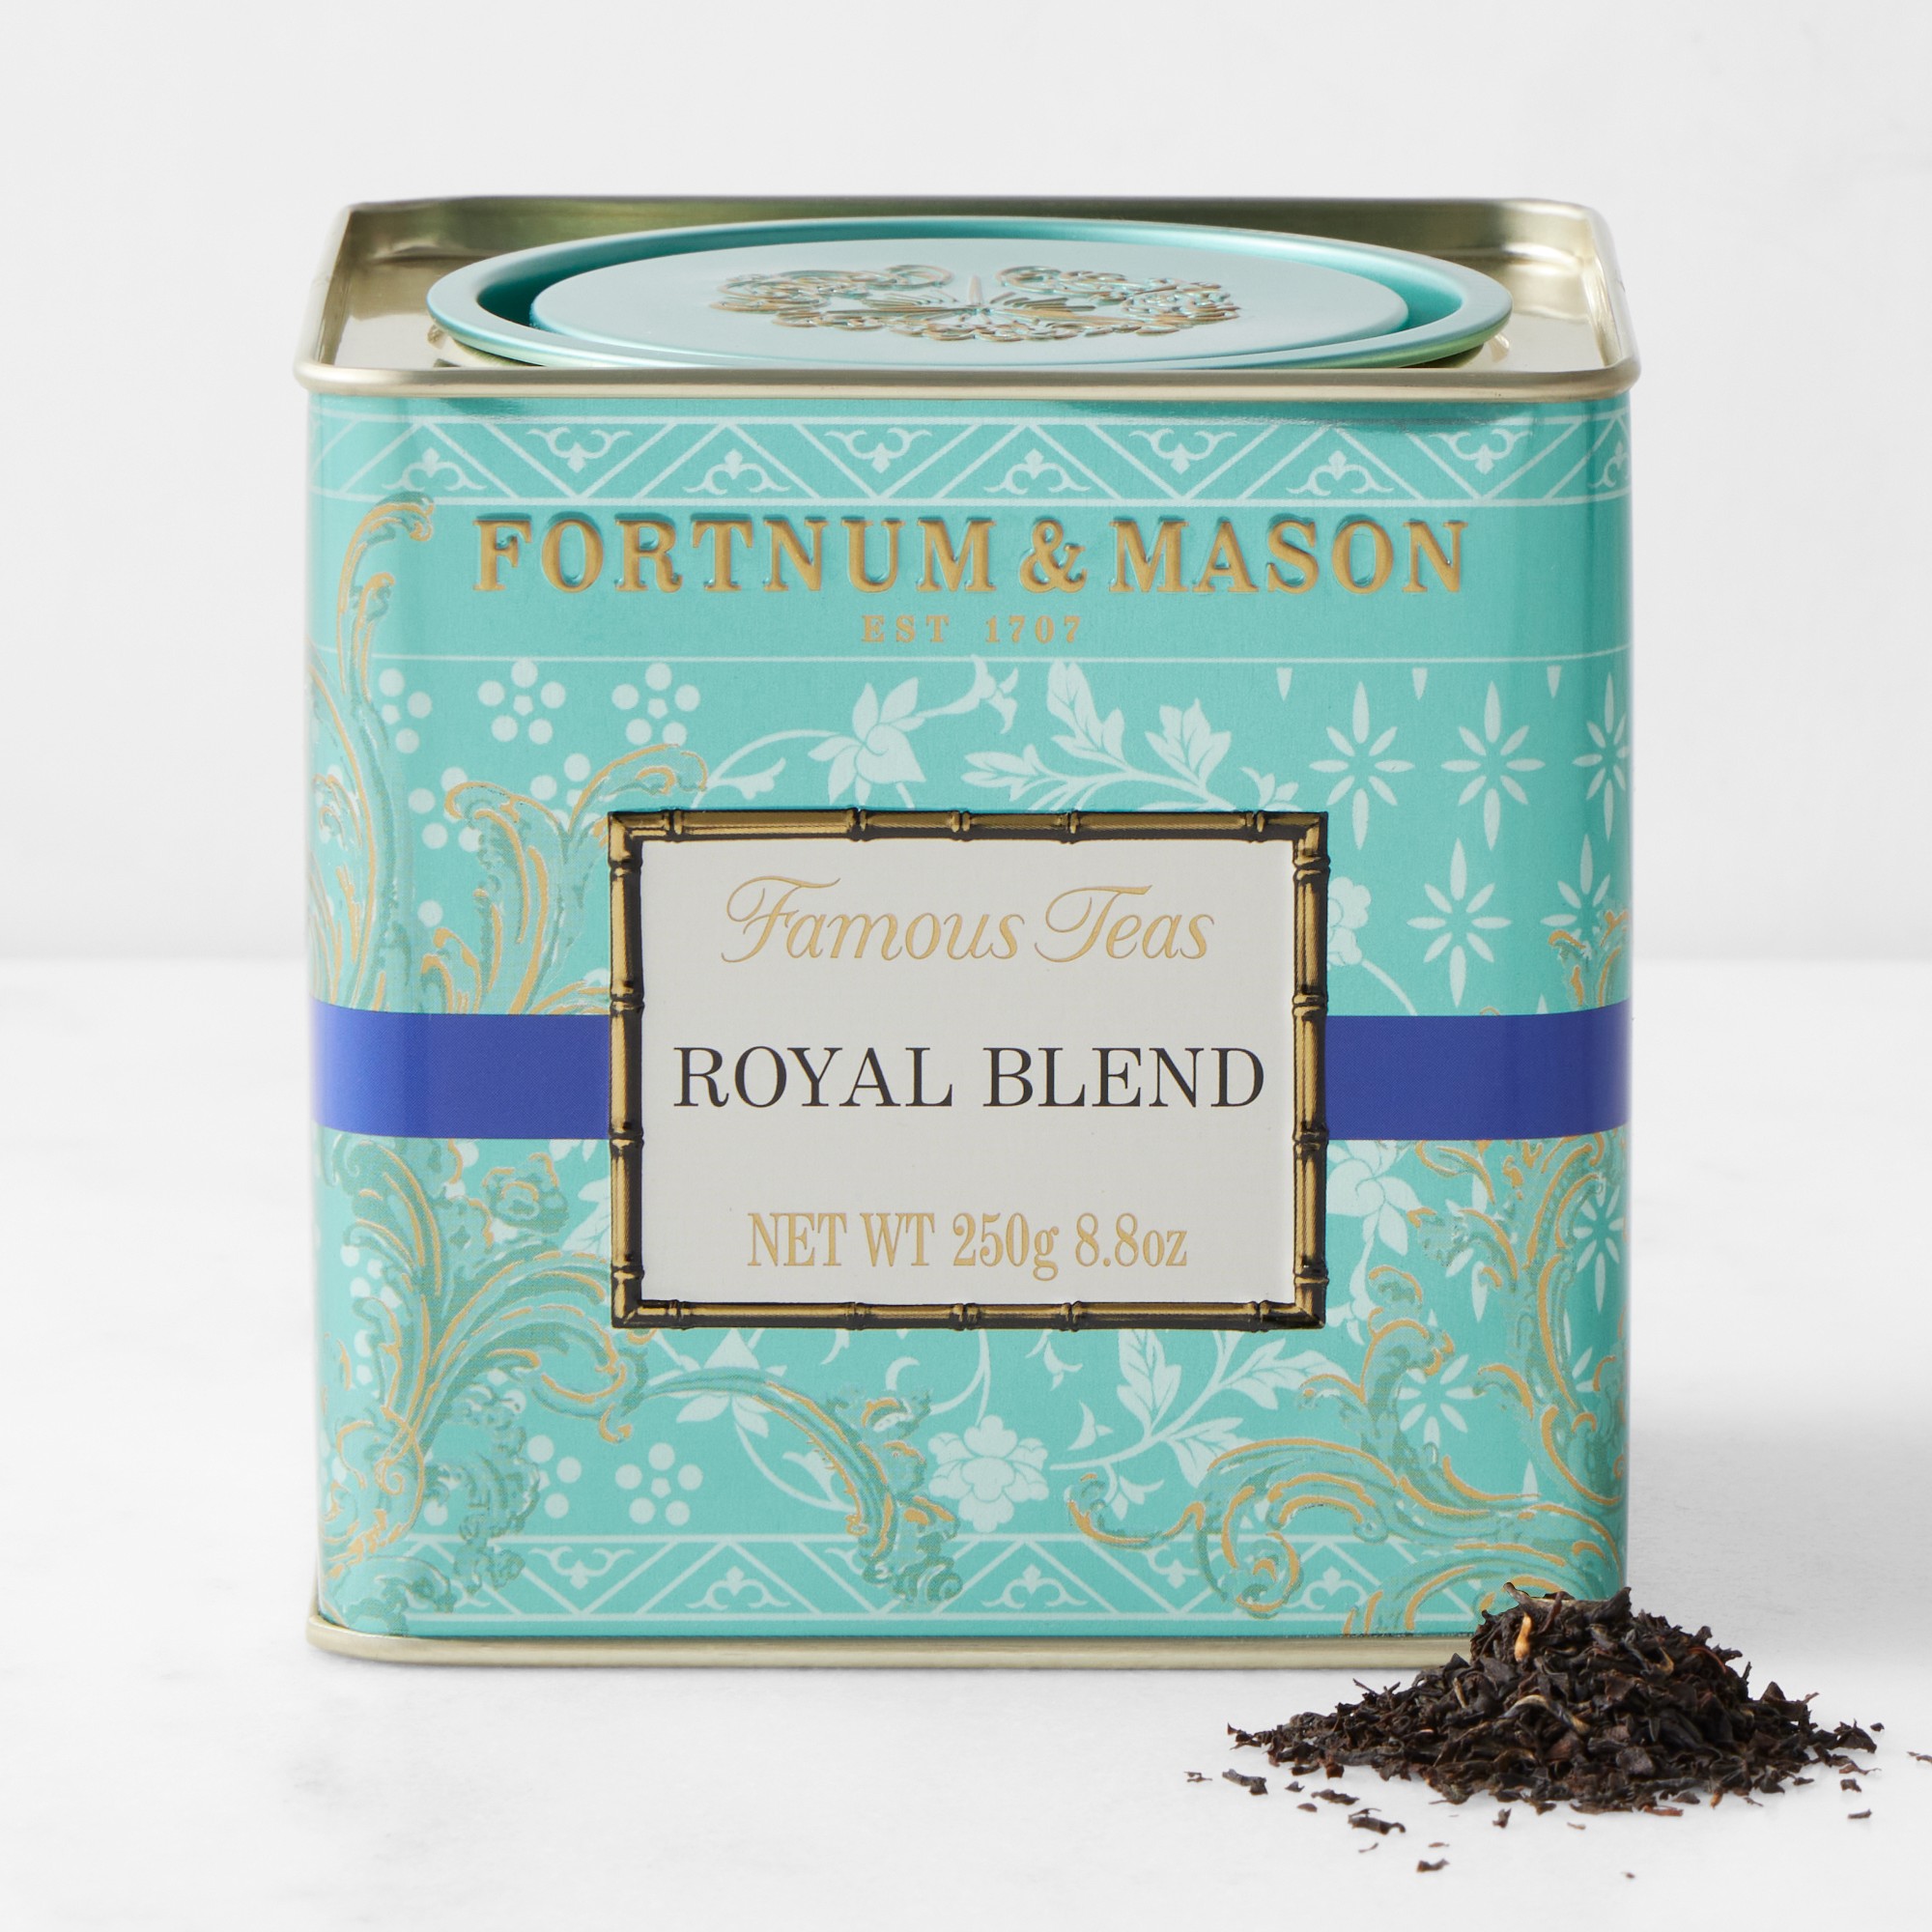 Fortnum & Mason Royal Blend Loose Leaf Tea